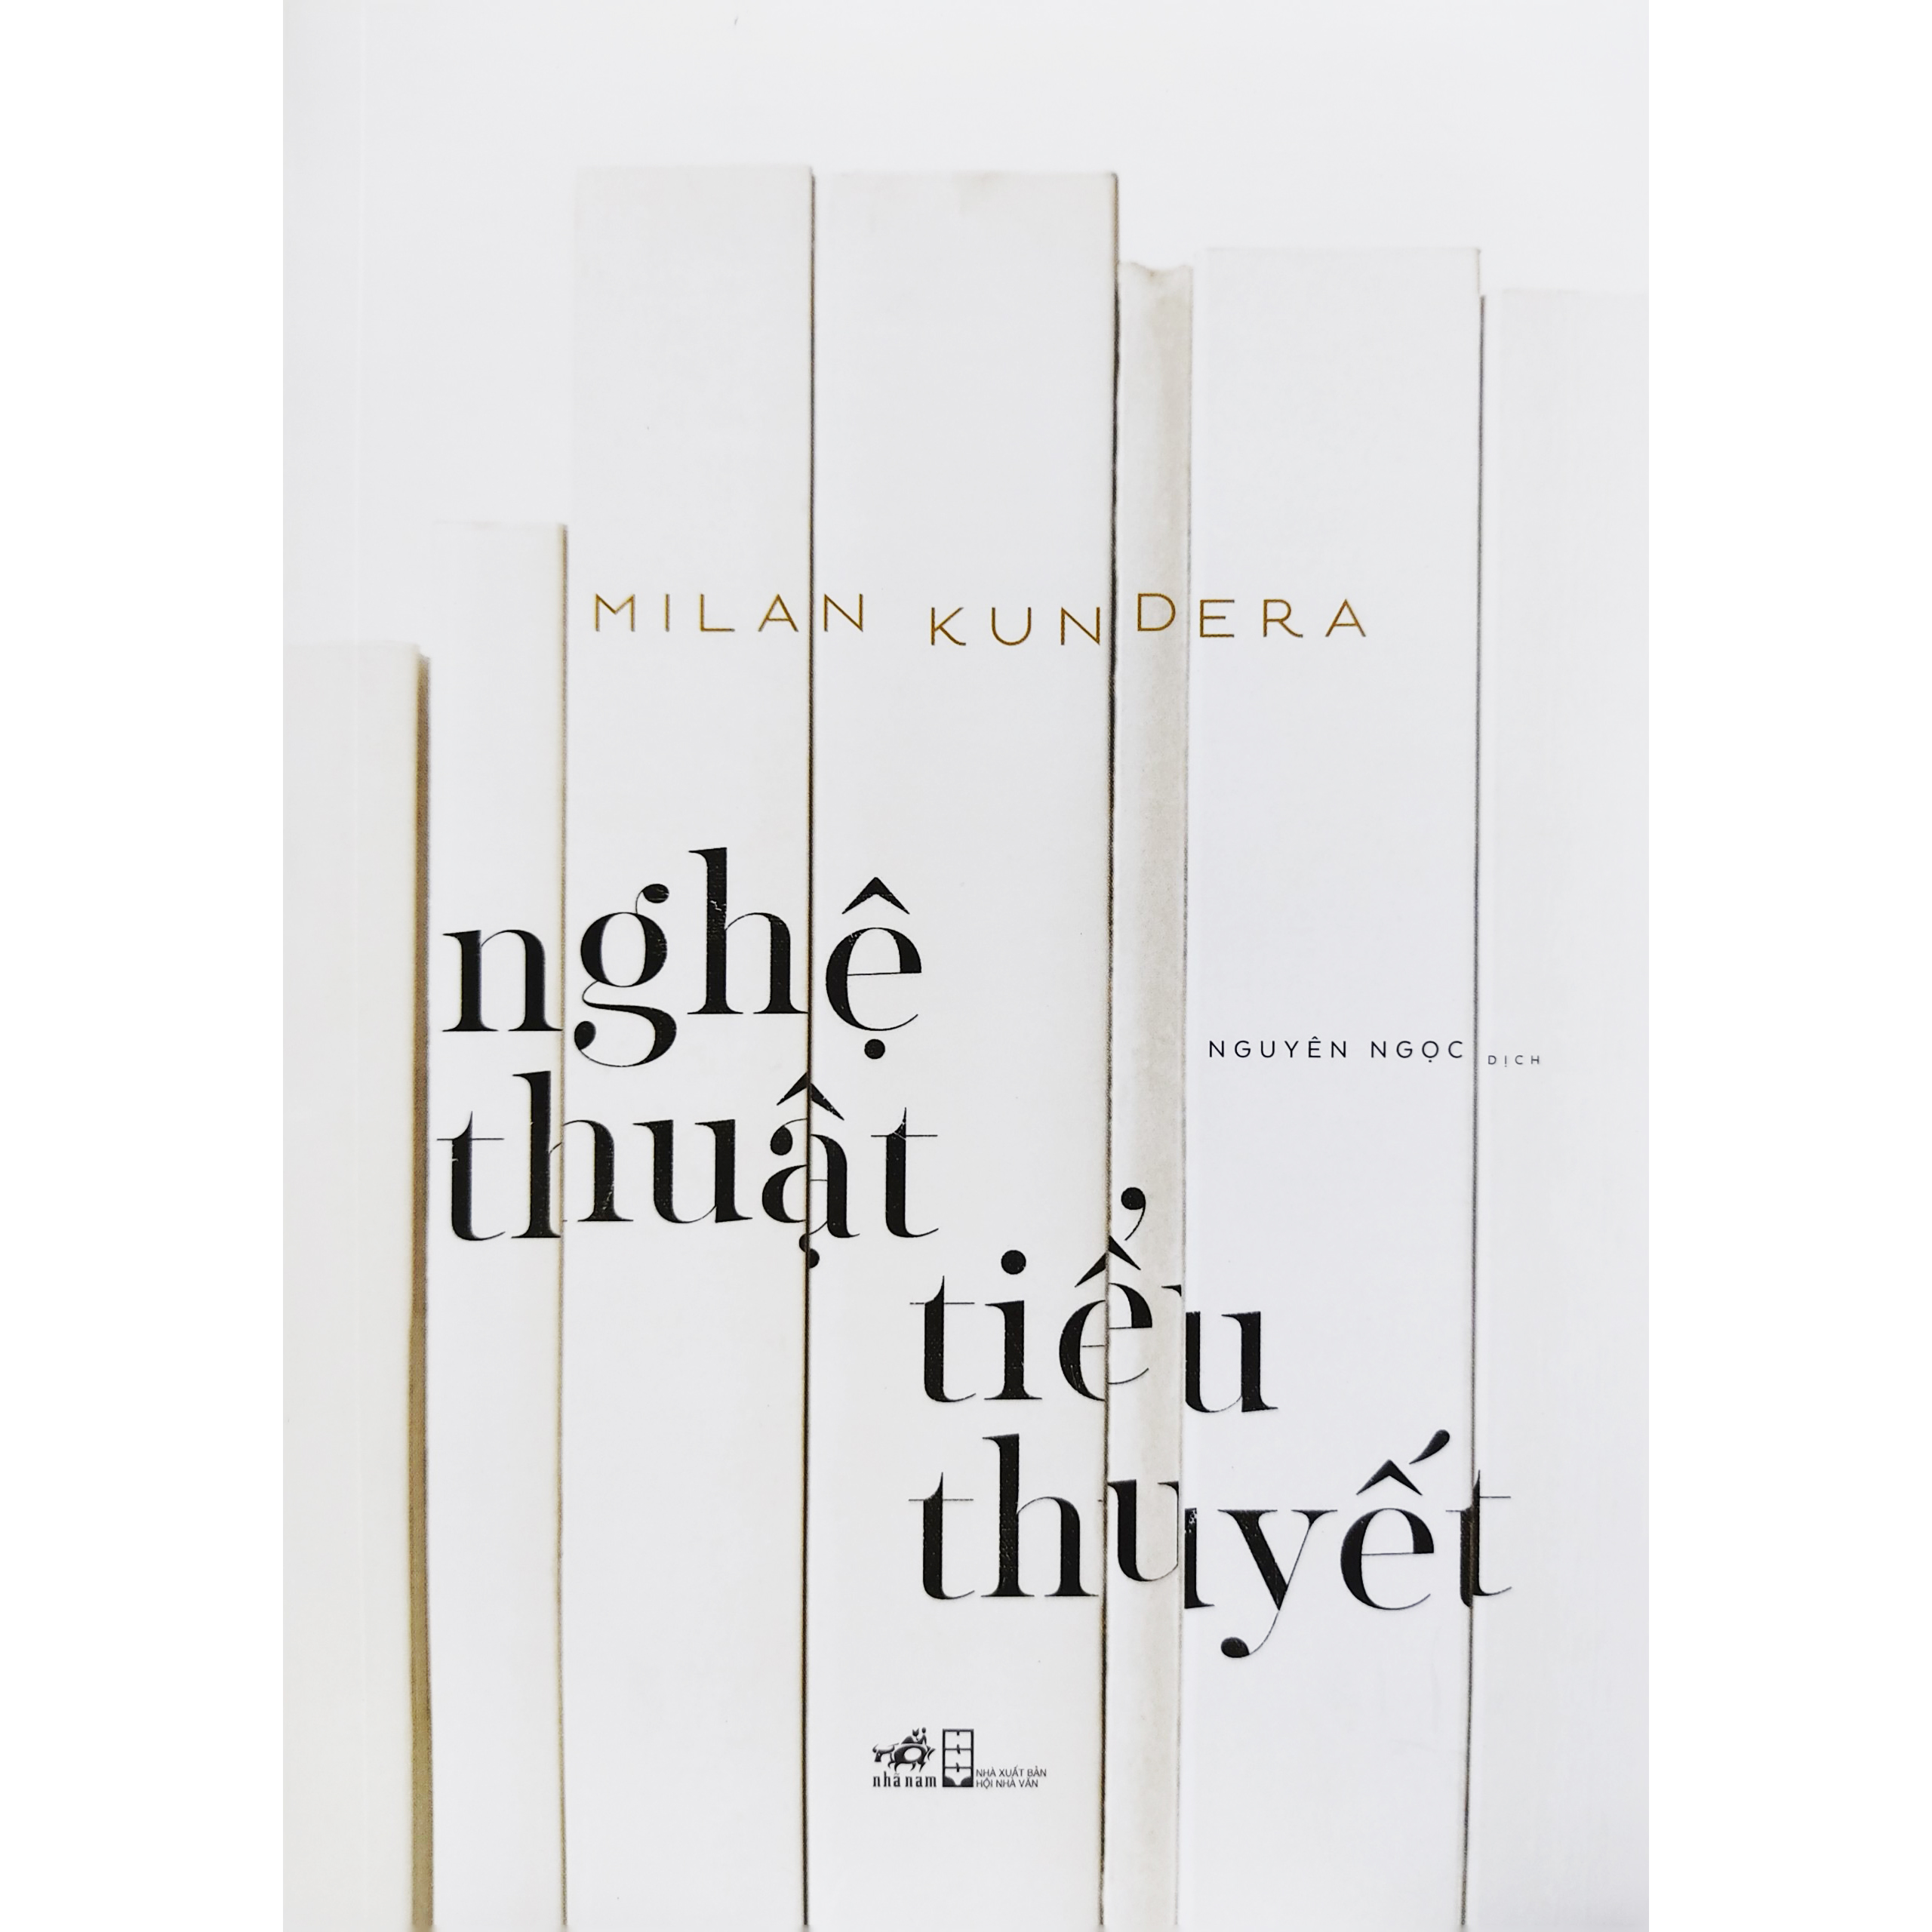 Sách - Nghệ thuật tiểu thuyết - Tác giả Milan Kundera